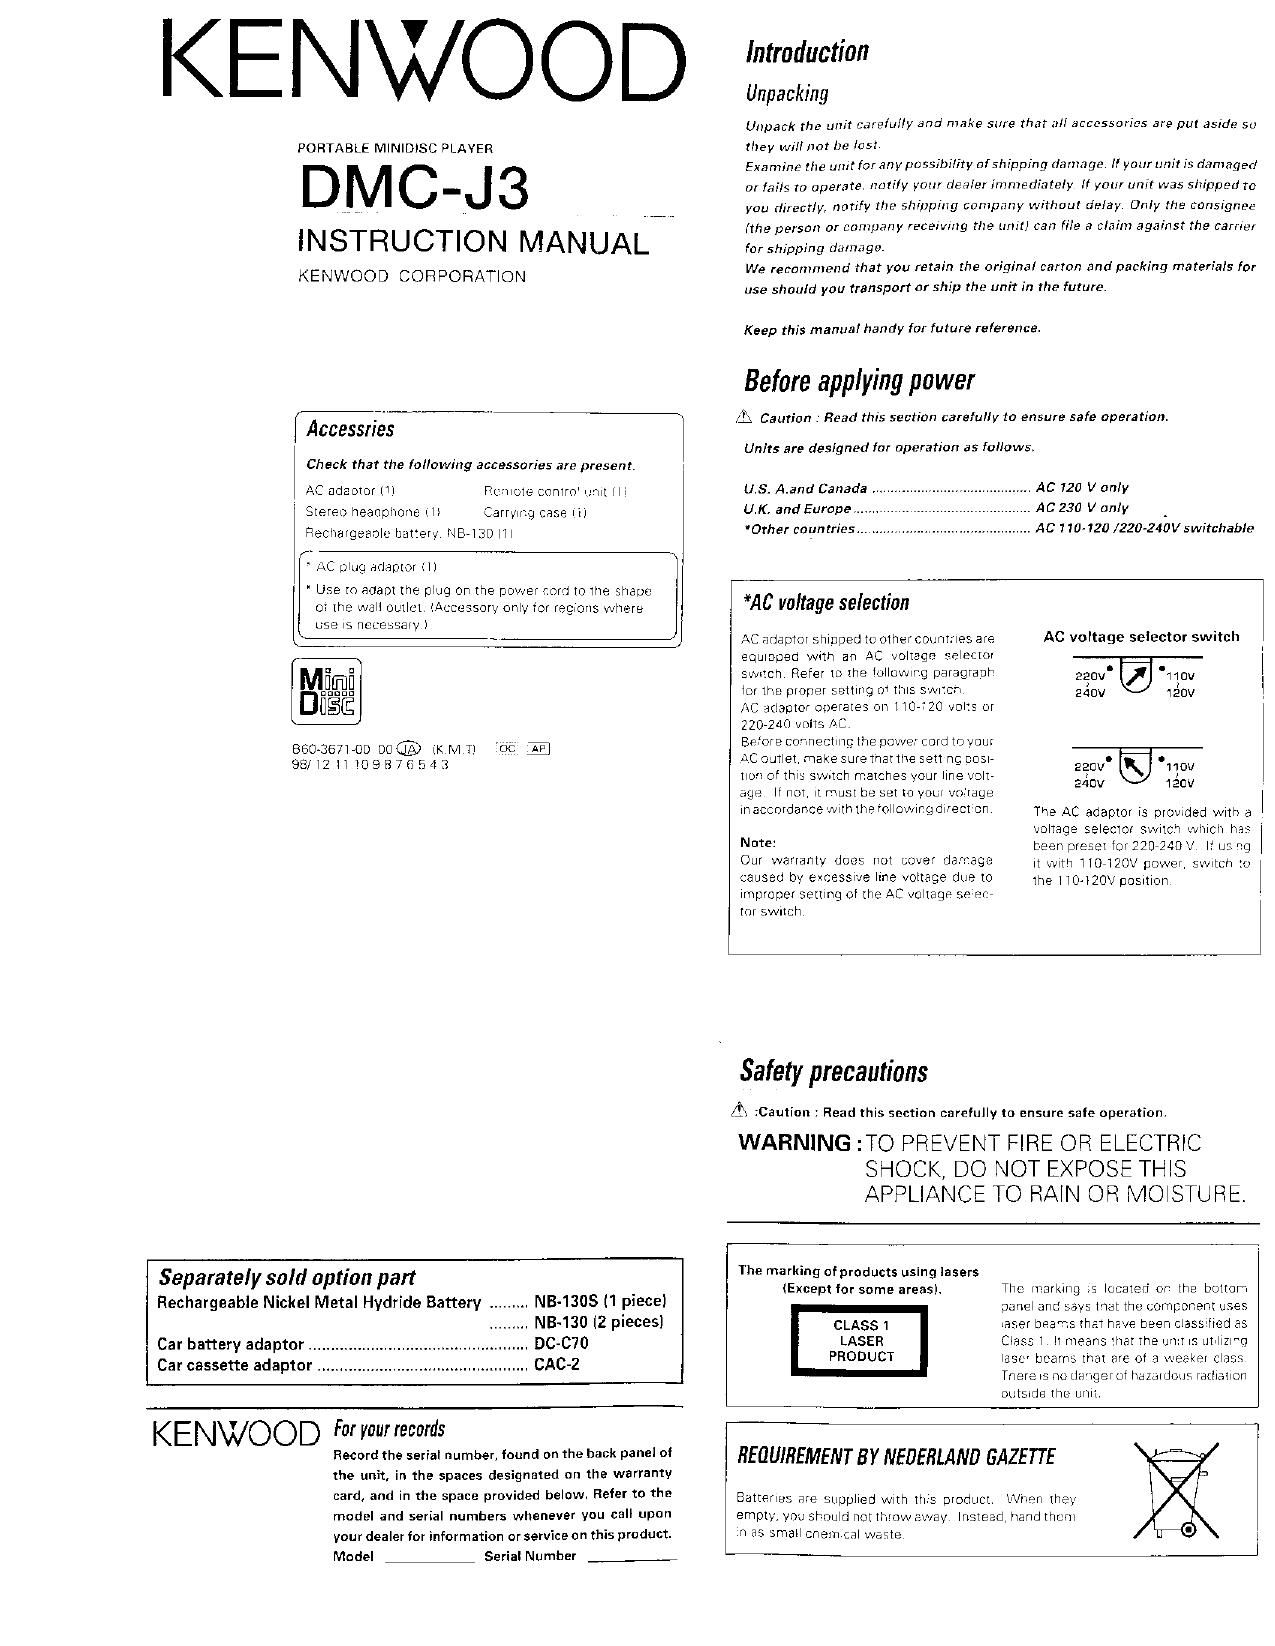 Kenwood DMCJ 3 Owners Manual